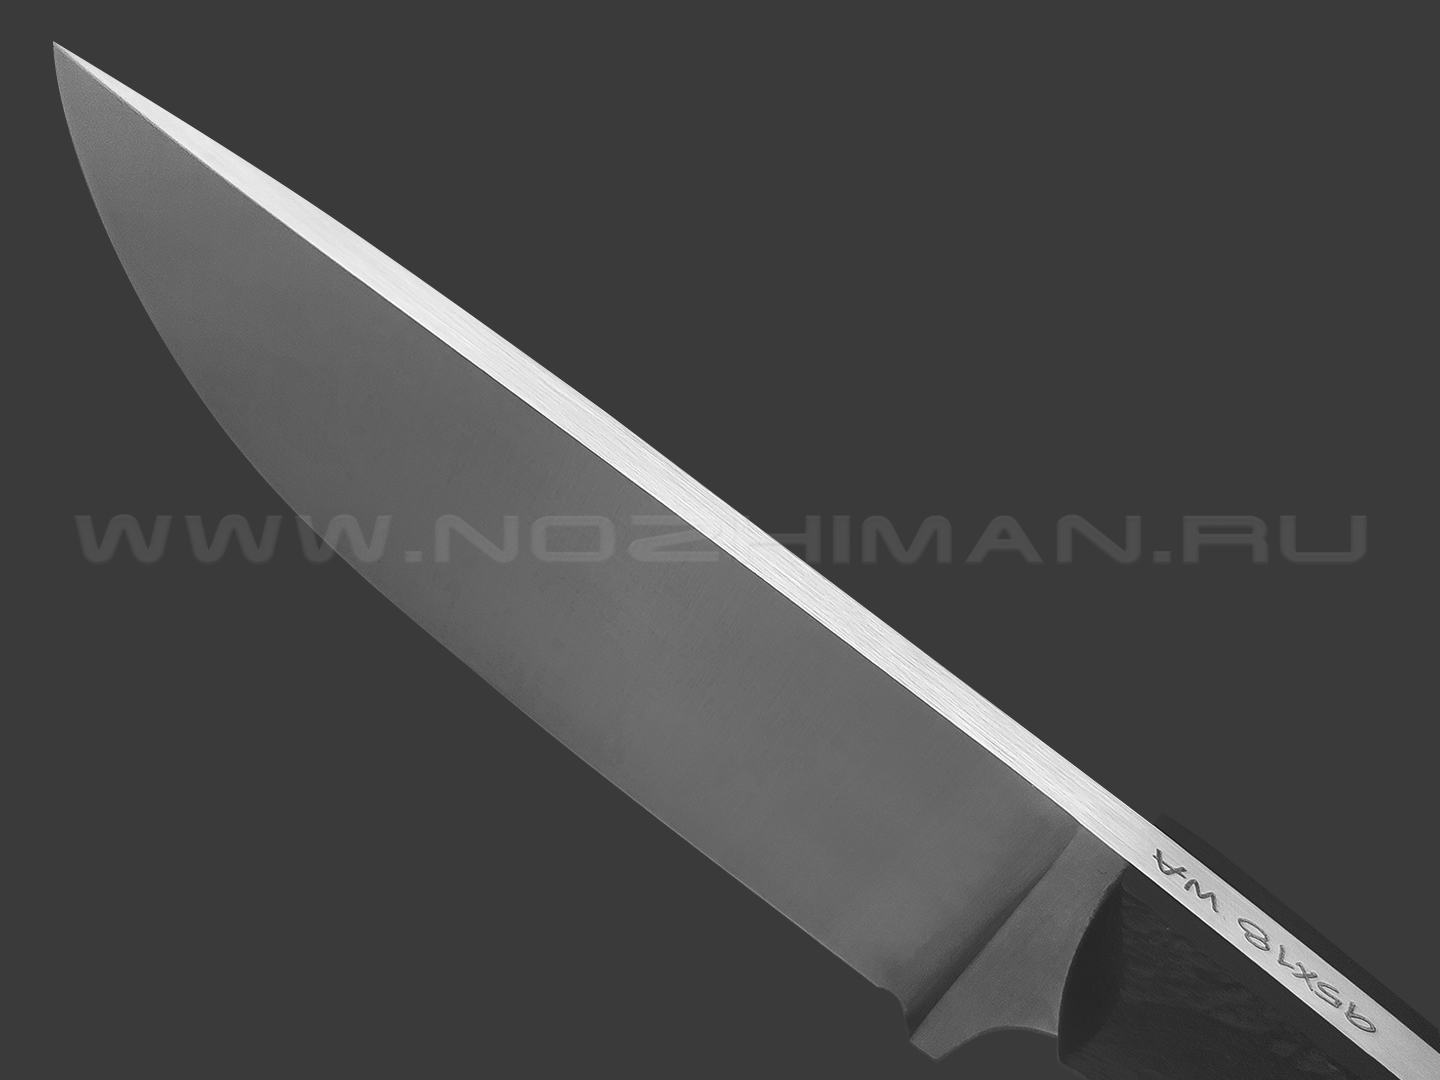 Волчий Век нож Шихан Mod. сталь 95Х18 WA satin, рукоять G10 black с фактурой